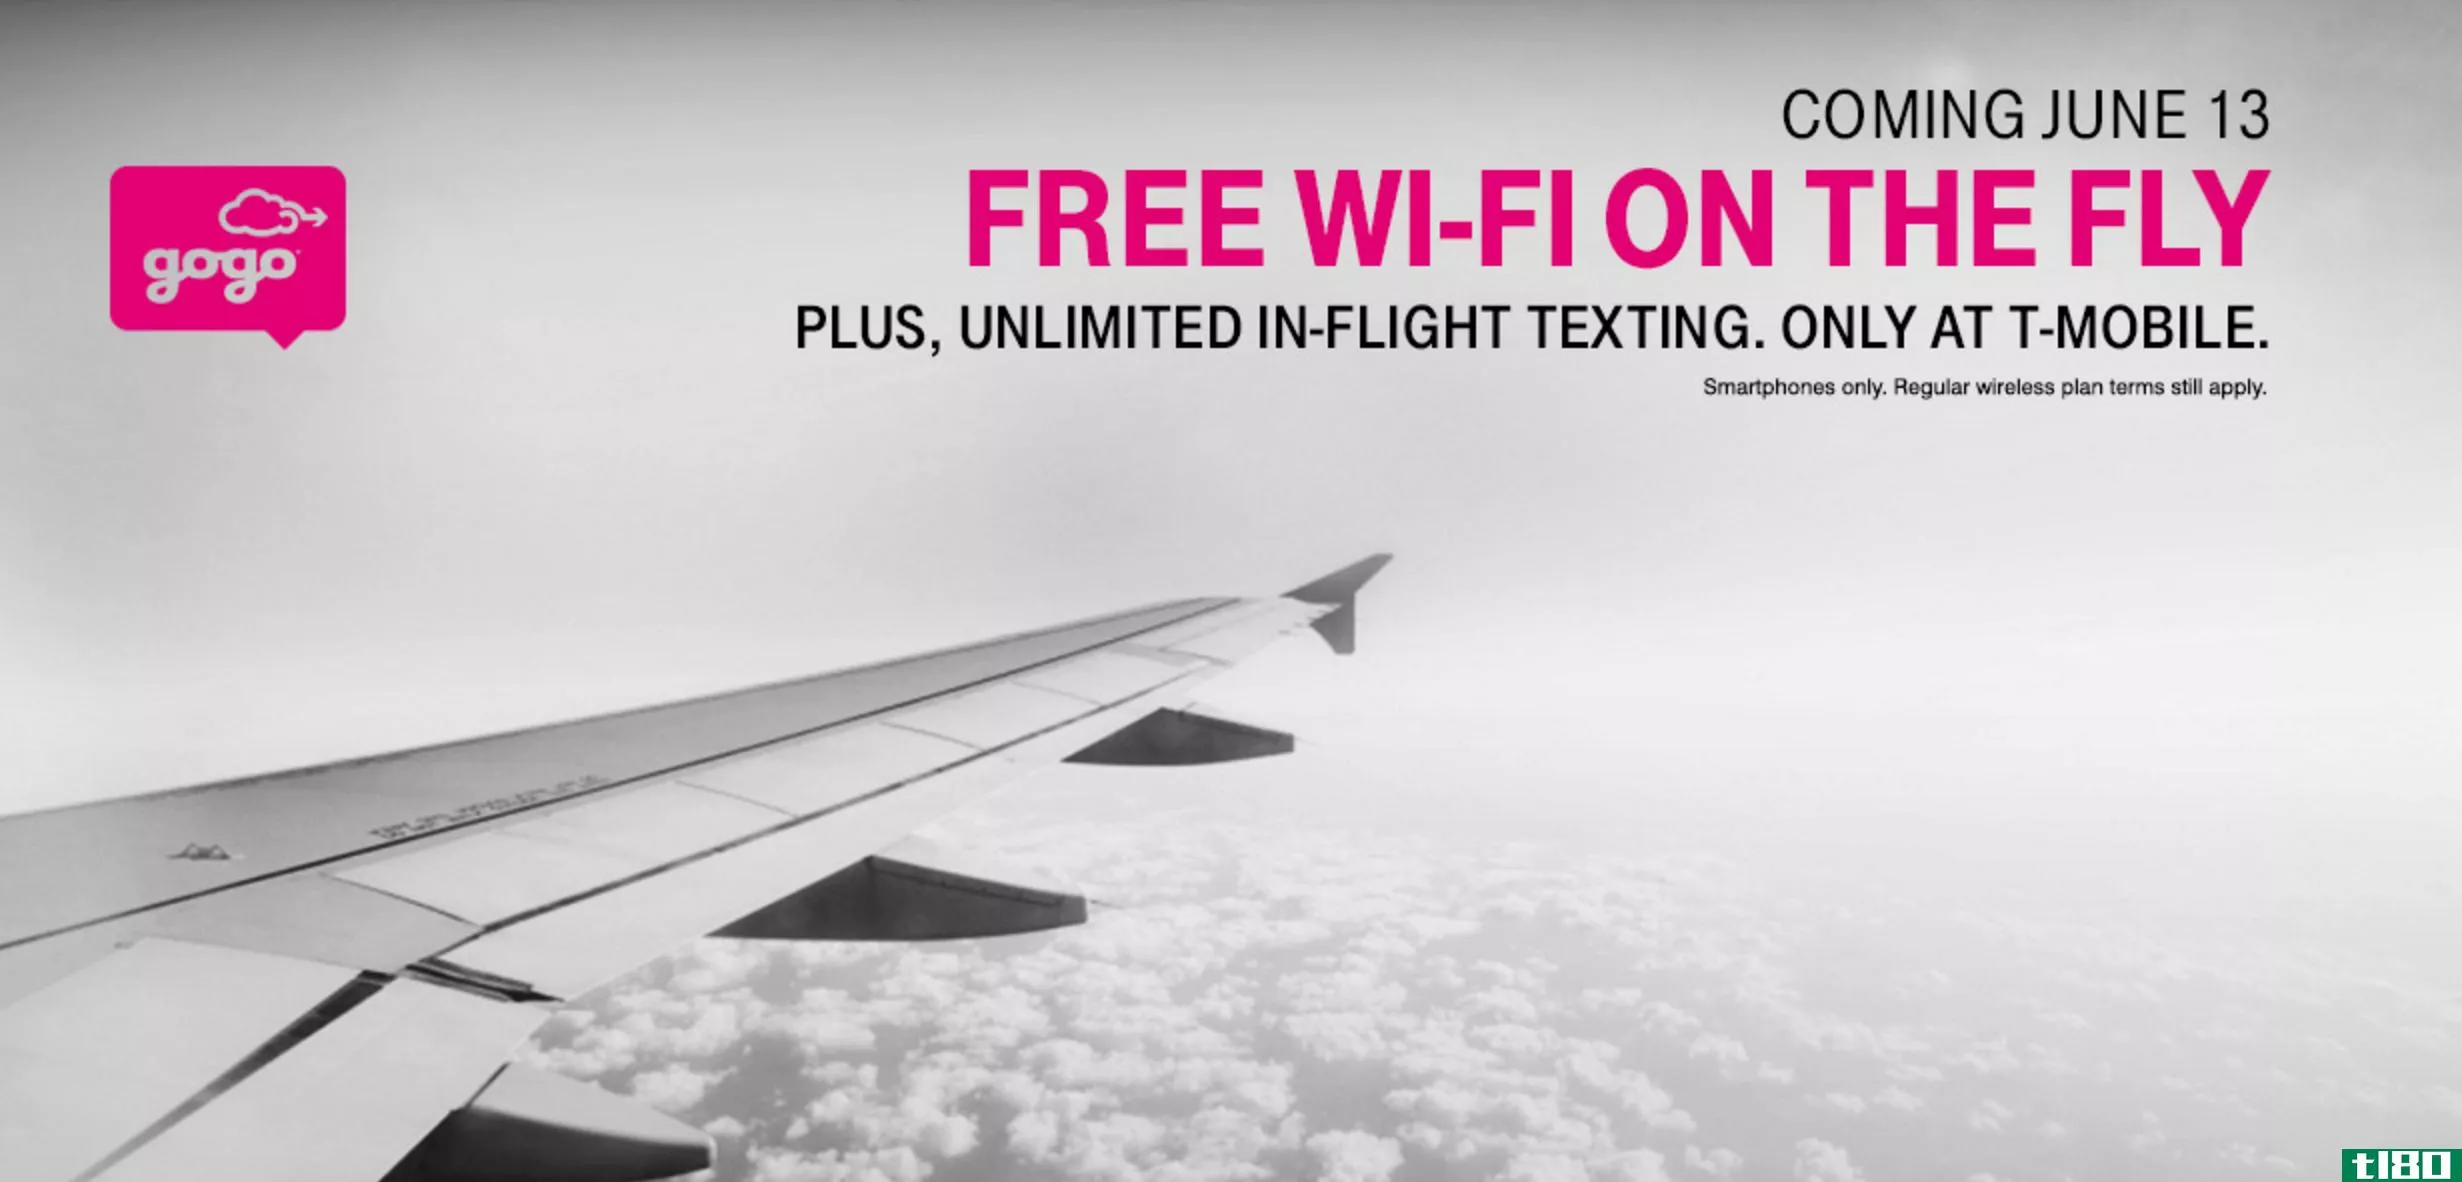 t-mobile的客户在每次航班上都可以免费享受一小时的gogo wi-fi